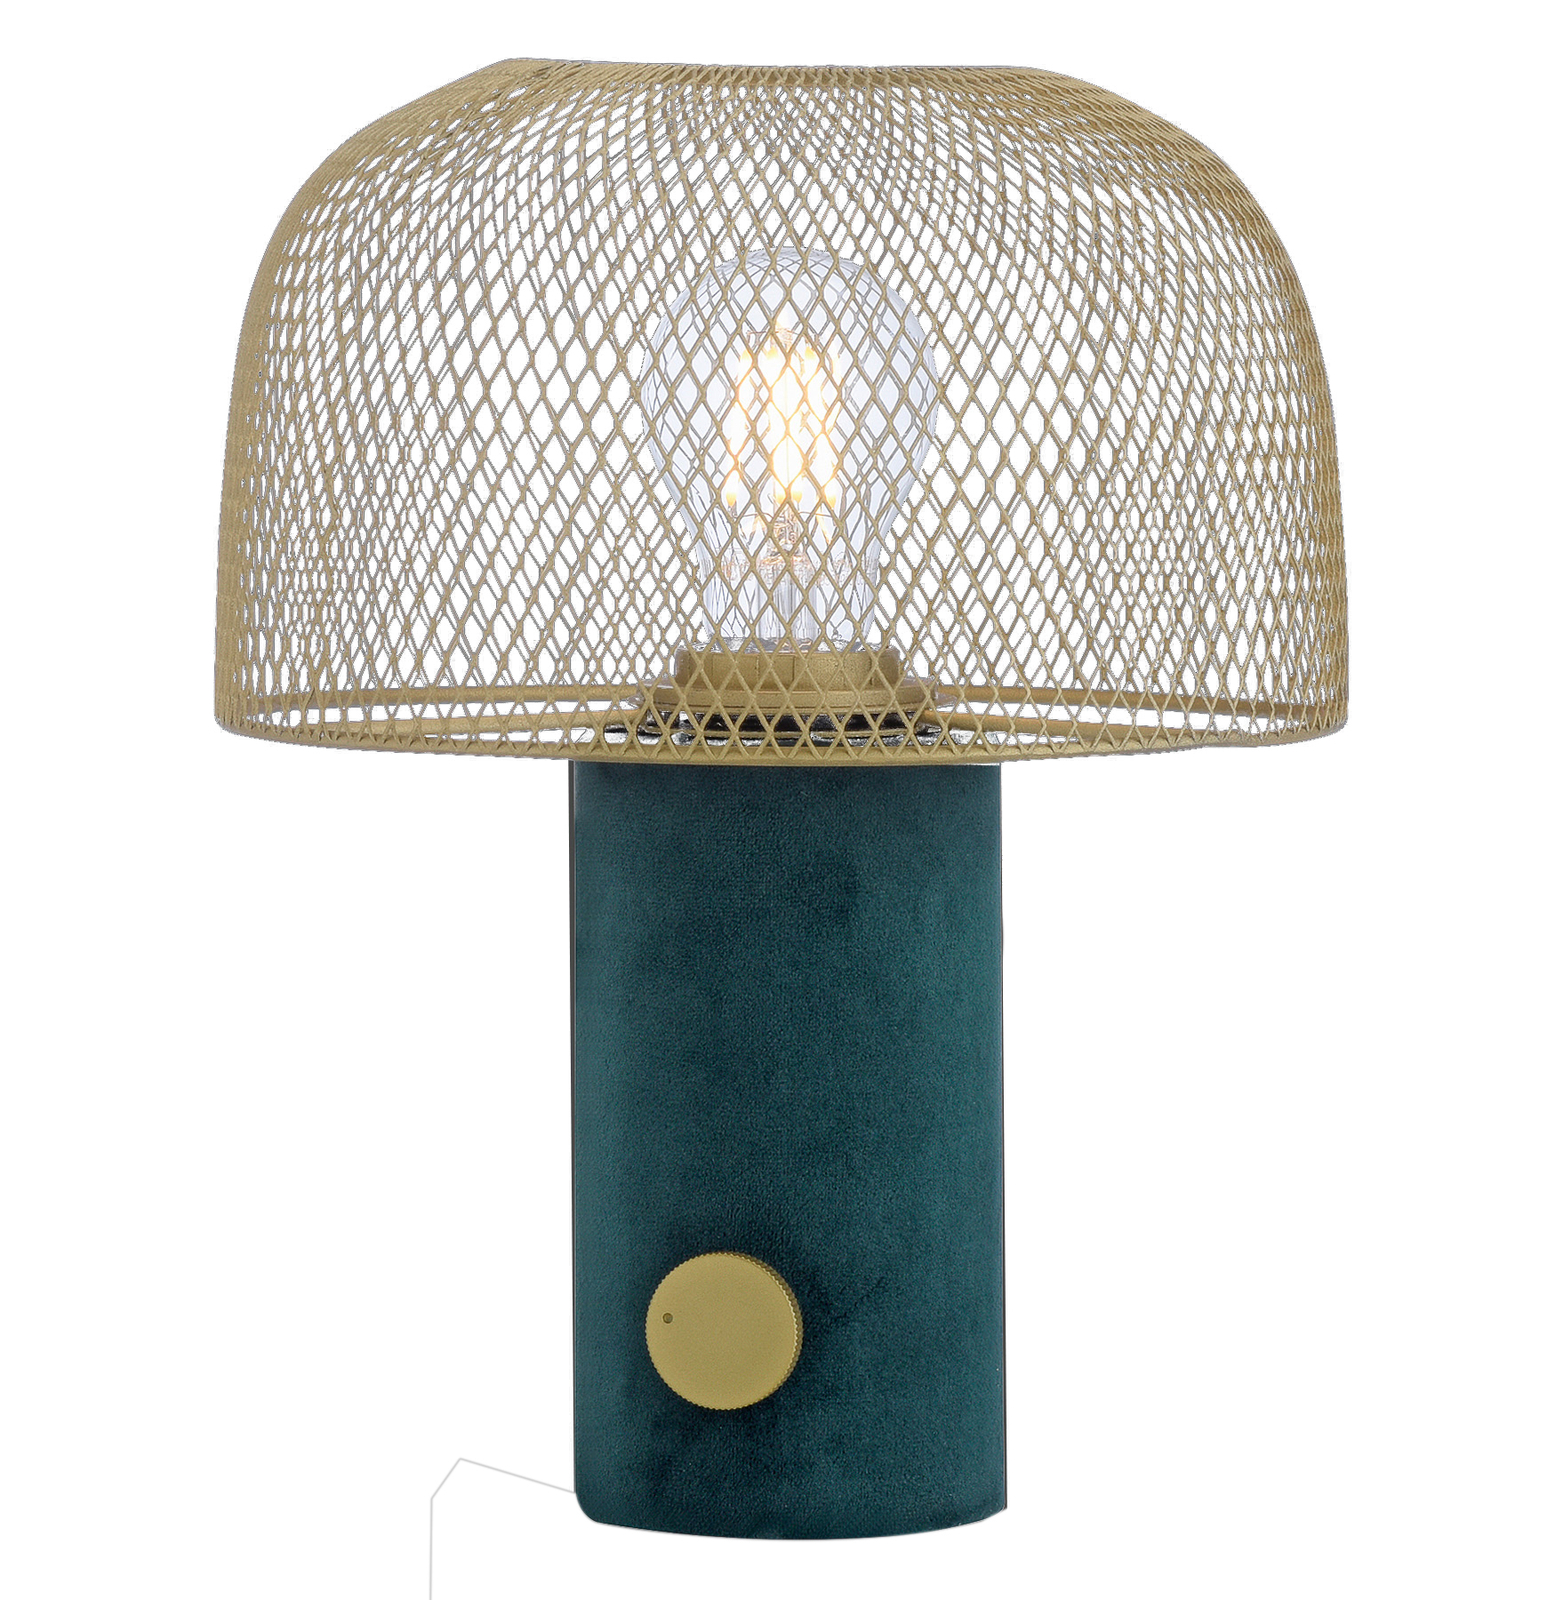 Lampa stołowa Dipper klatkowy klosz, złota/zielona